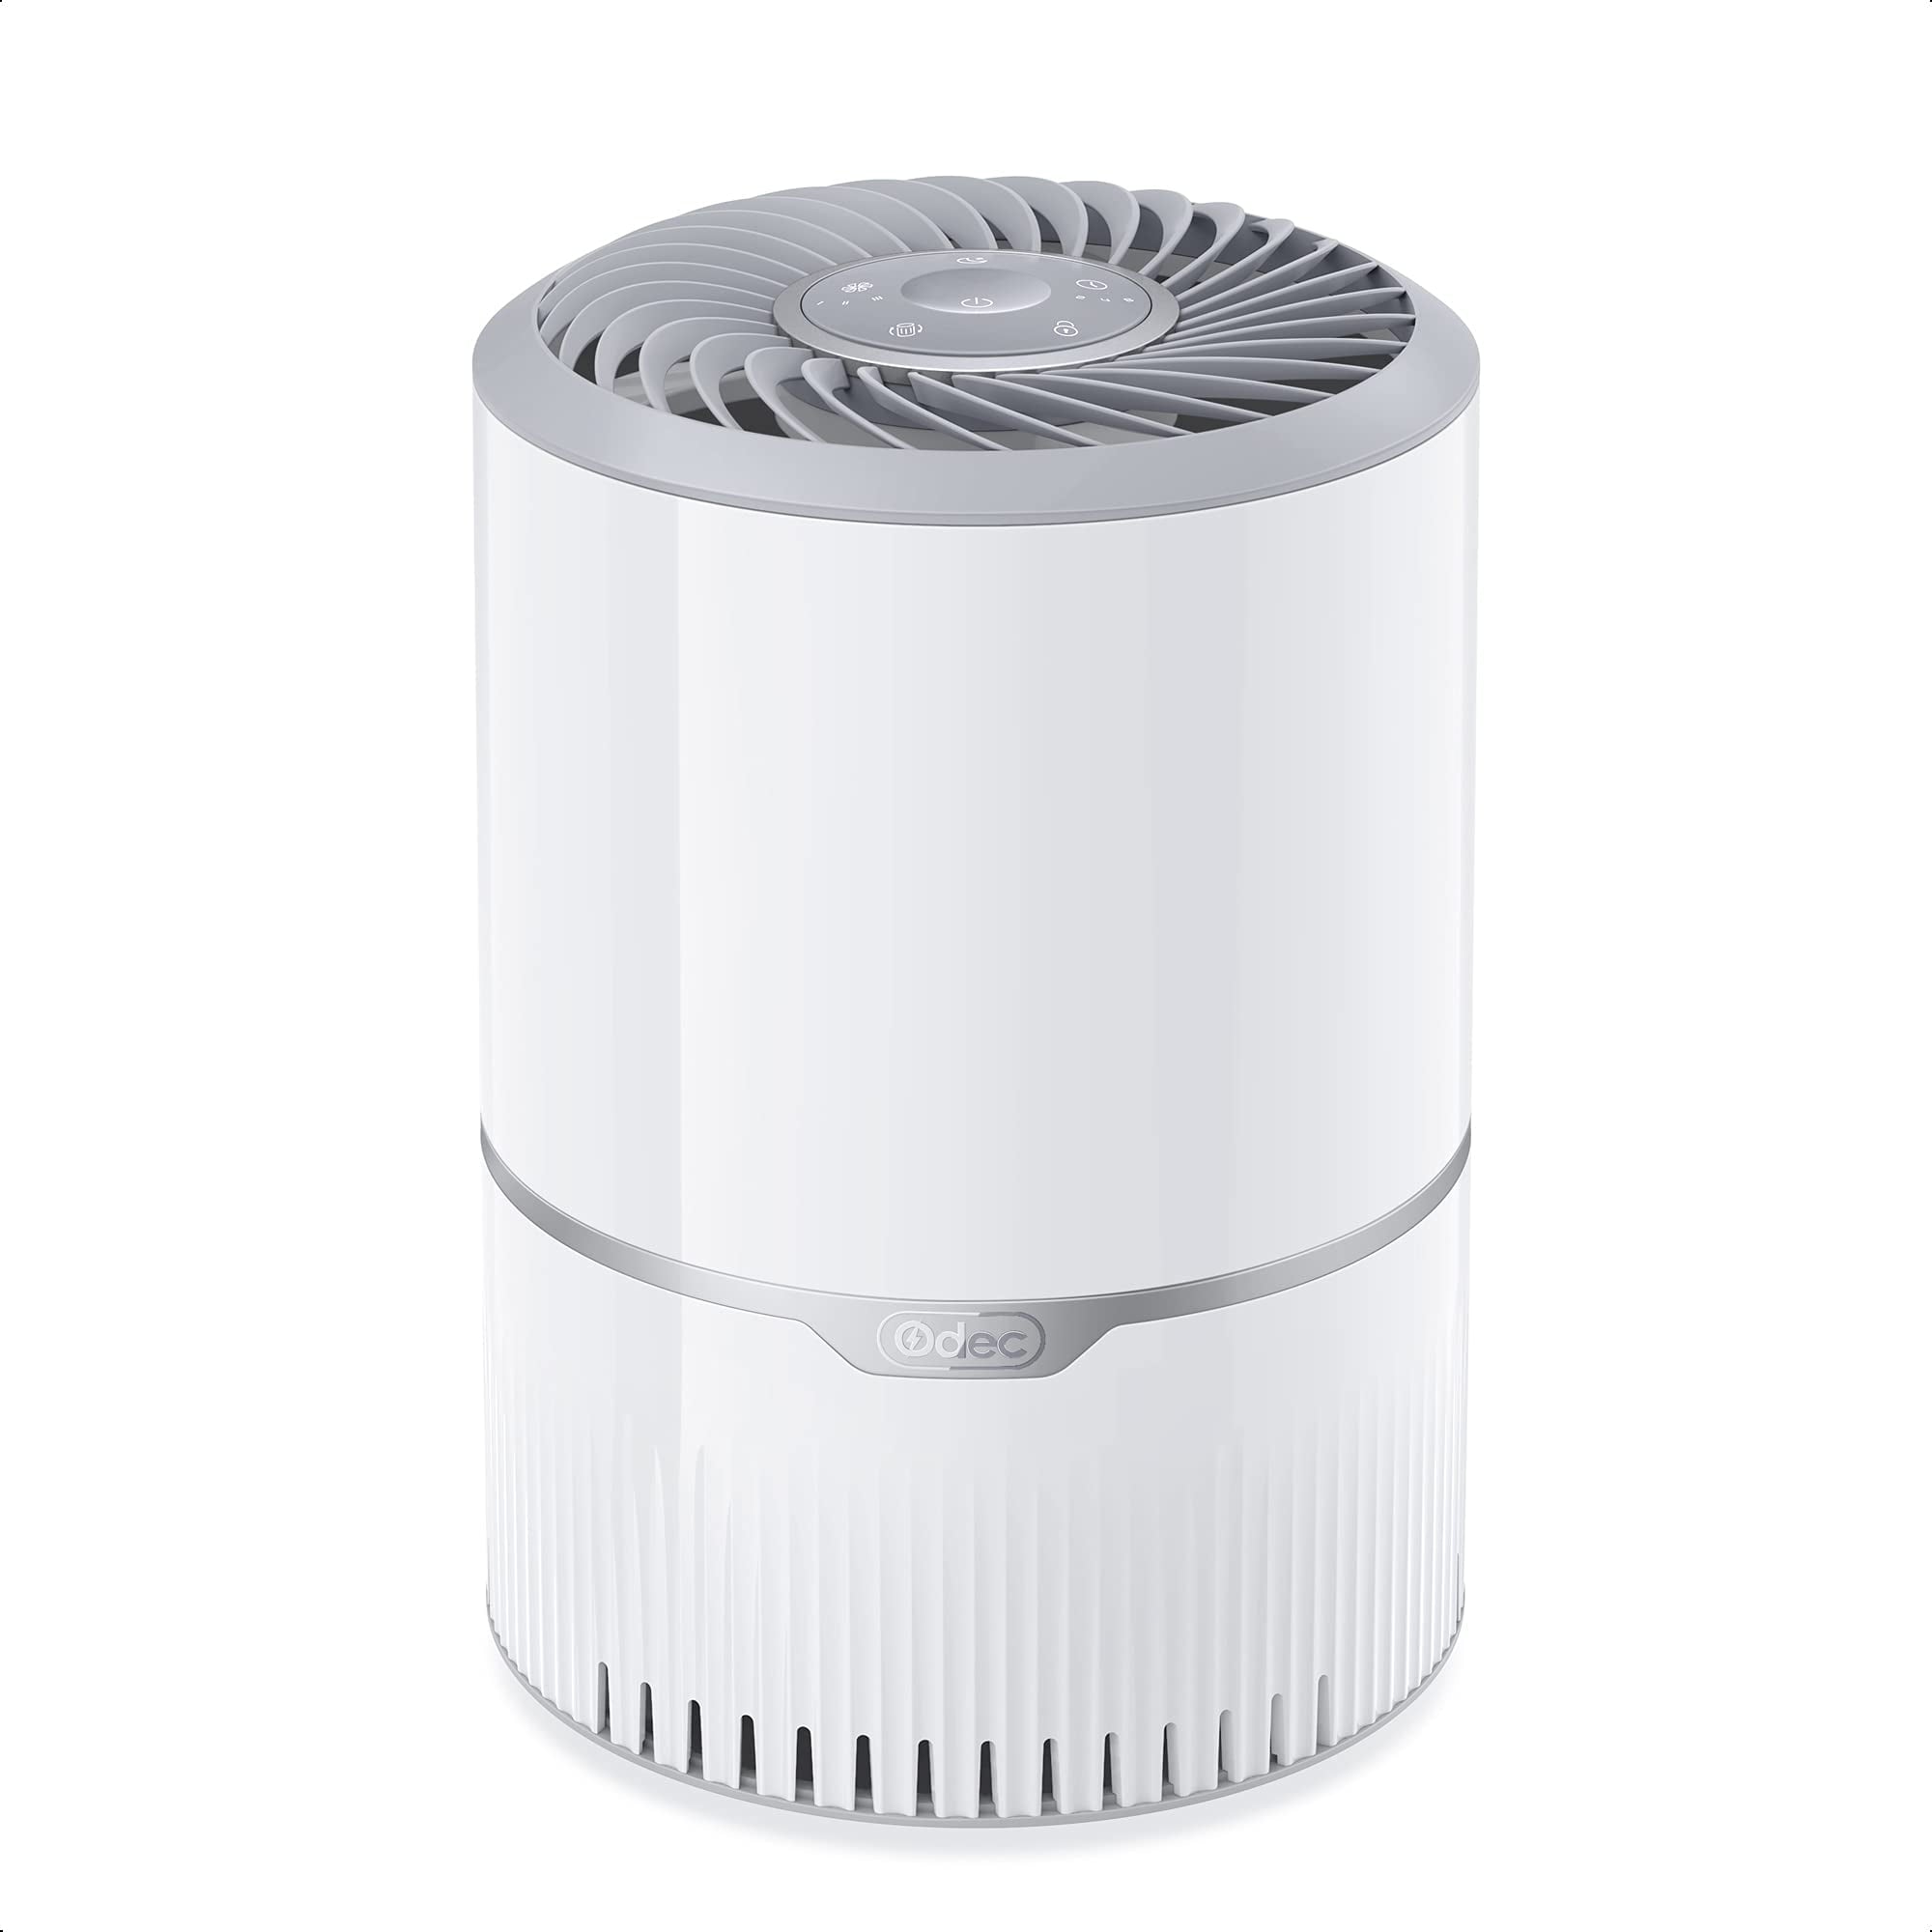 ODEC Air Purifier H13 True Hepa Filter Removes 99.97% Dust Smoke Pollen Pet Dander